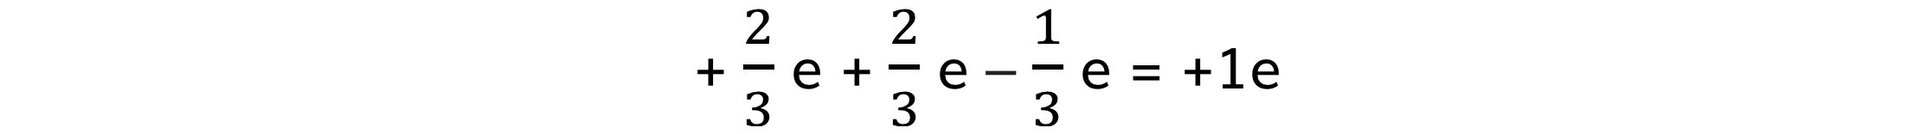 Quark-Charge-Equation